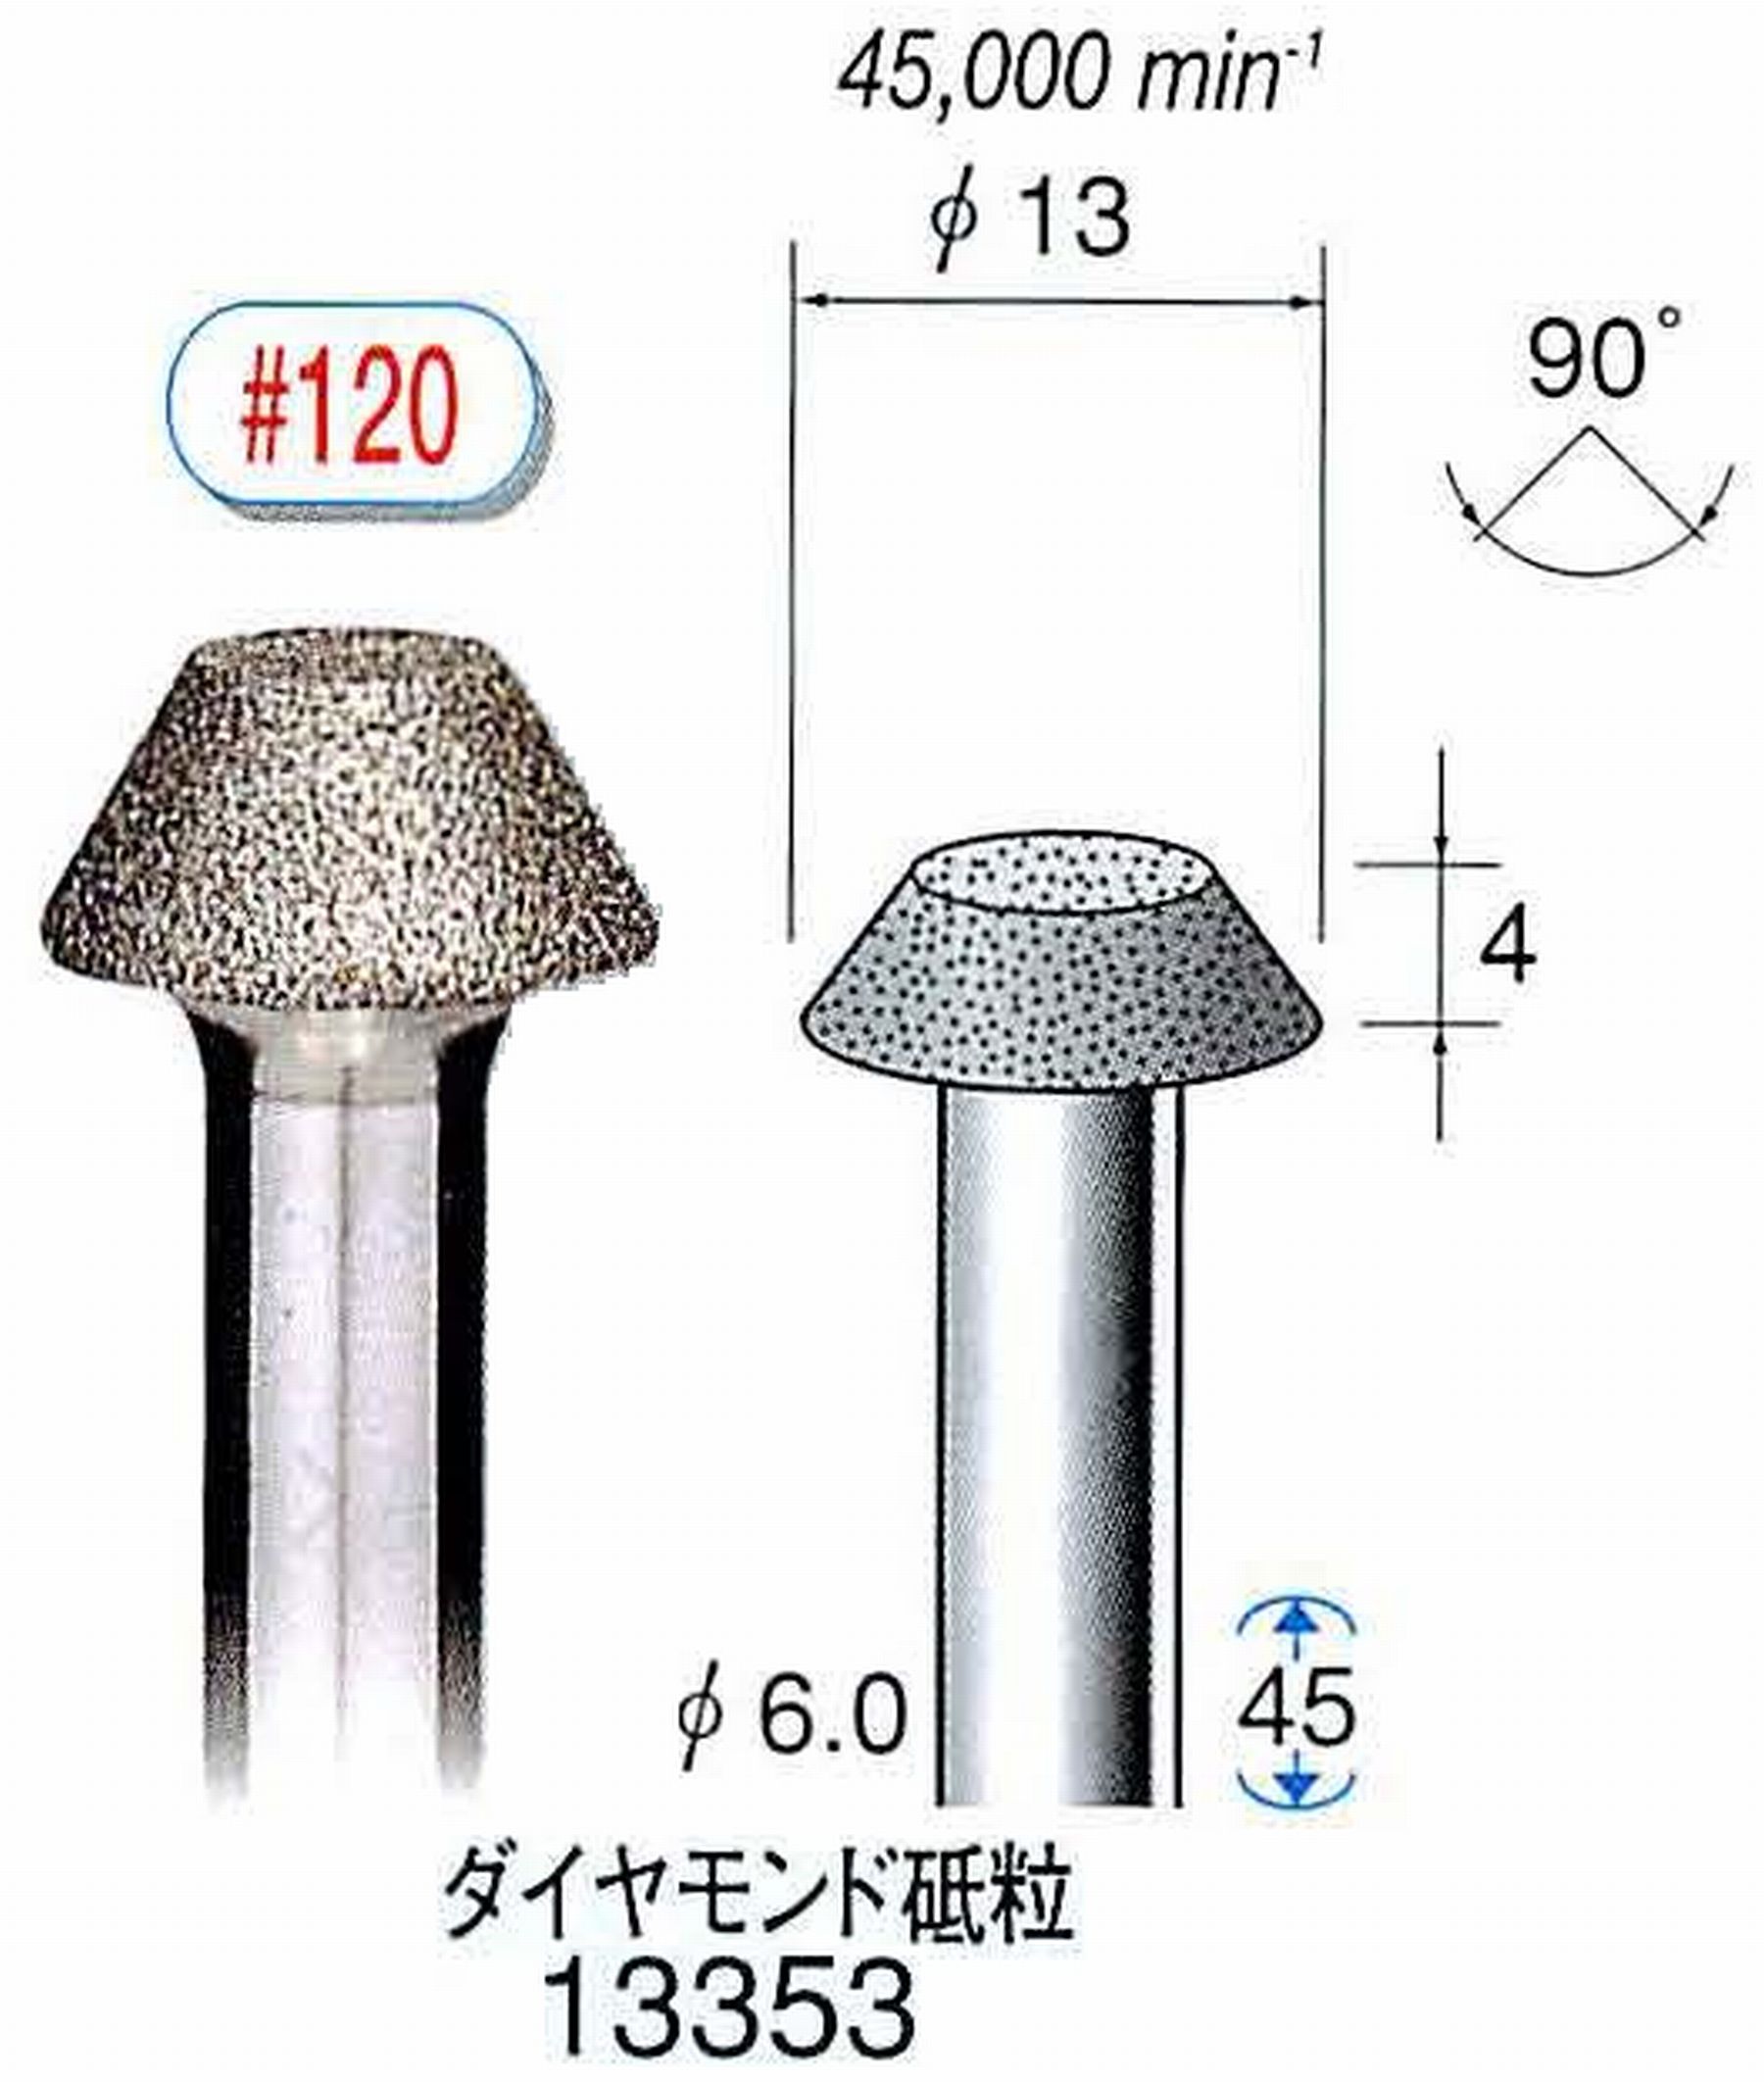 ナカニシ/NAKANISHI 電着ダイヤモンド ダイヤモンド砥粒 軸径(シャンク)φ6.0mm 13353